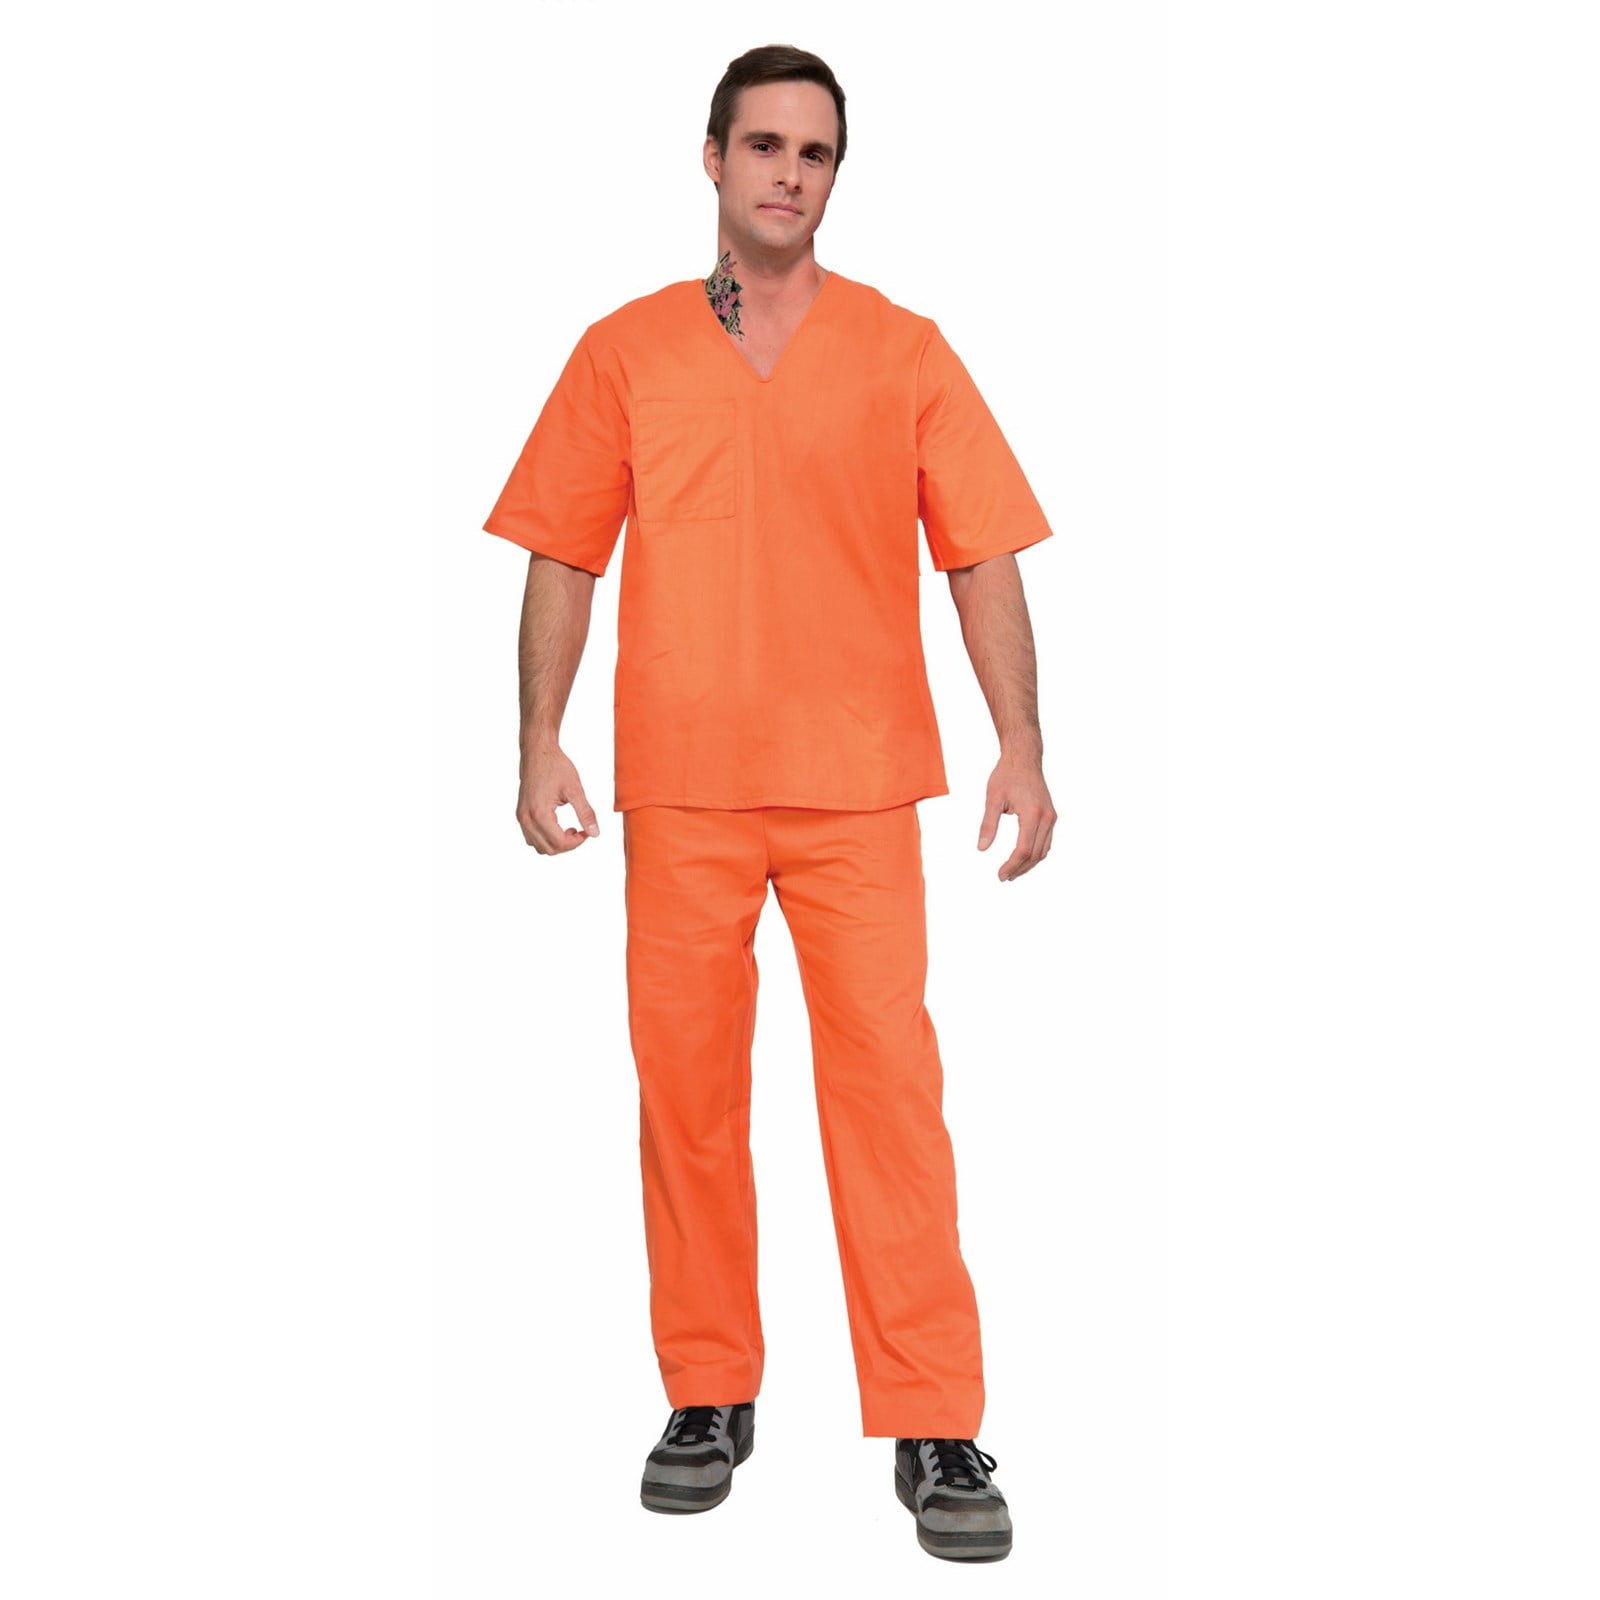 Люди в оранжевой одежде